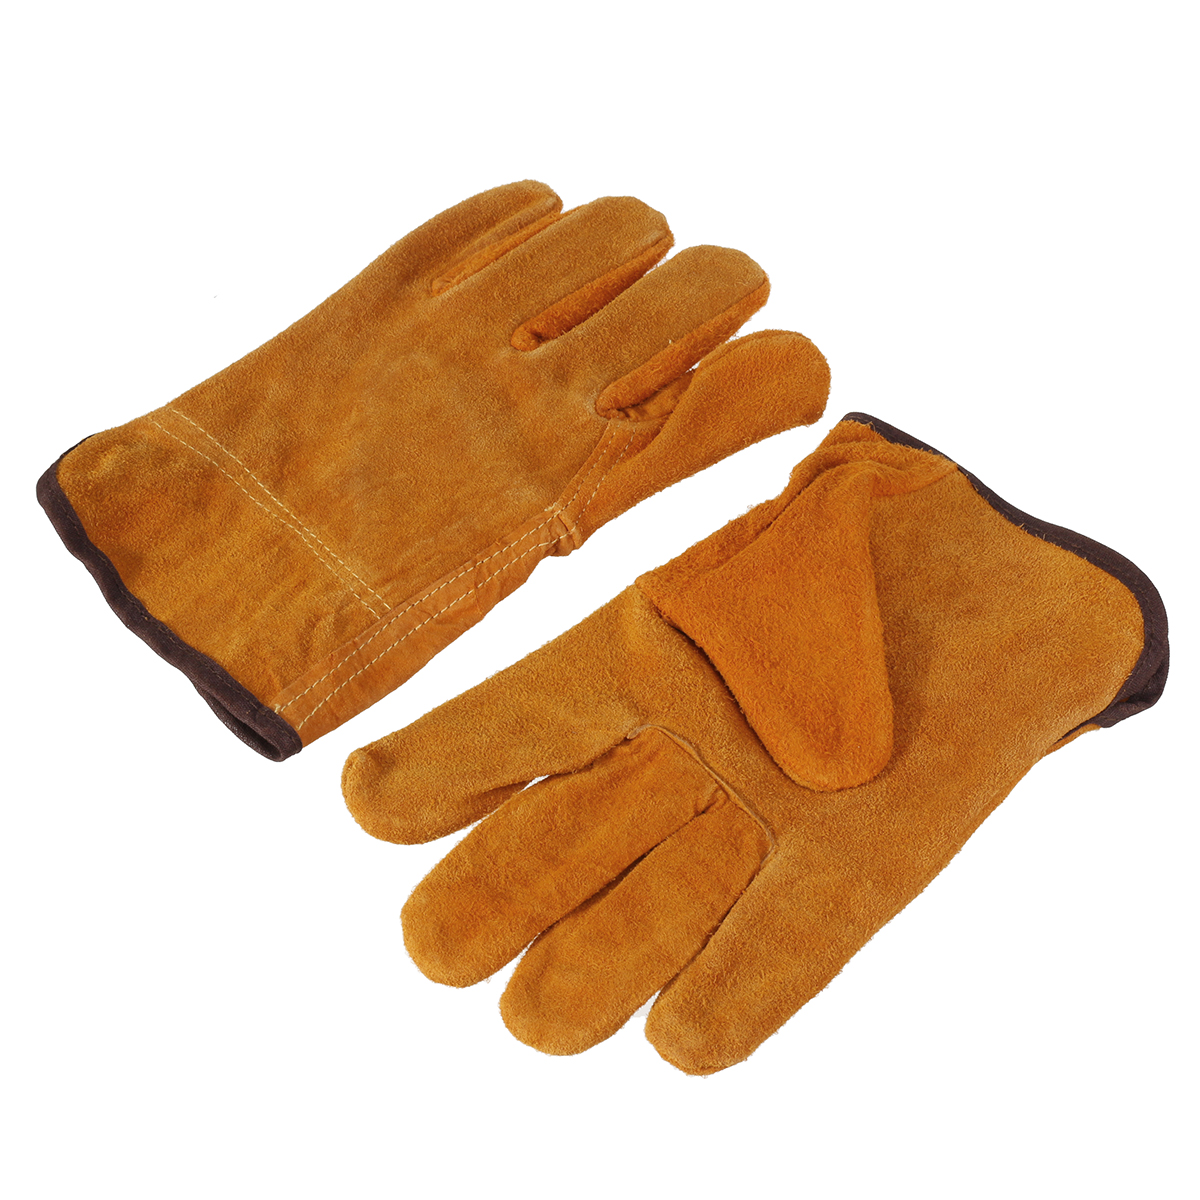 Garden-Gardening-Welder-Gloves-Men-Women-Thorn-Proof-Leather-Work-Gloves-Yellow-1630104-3